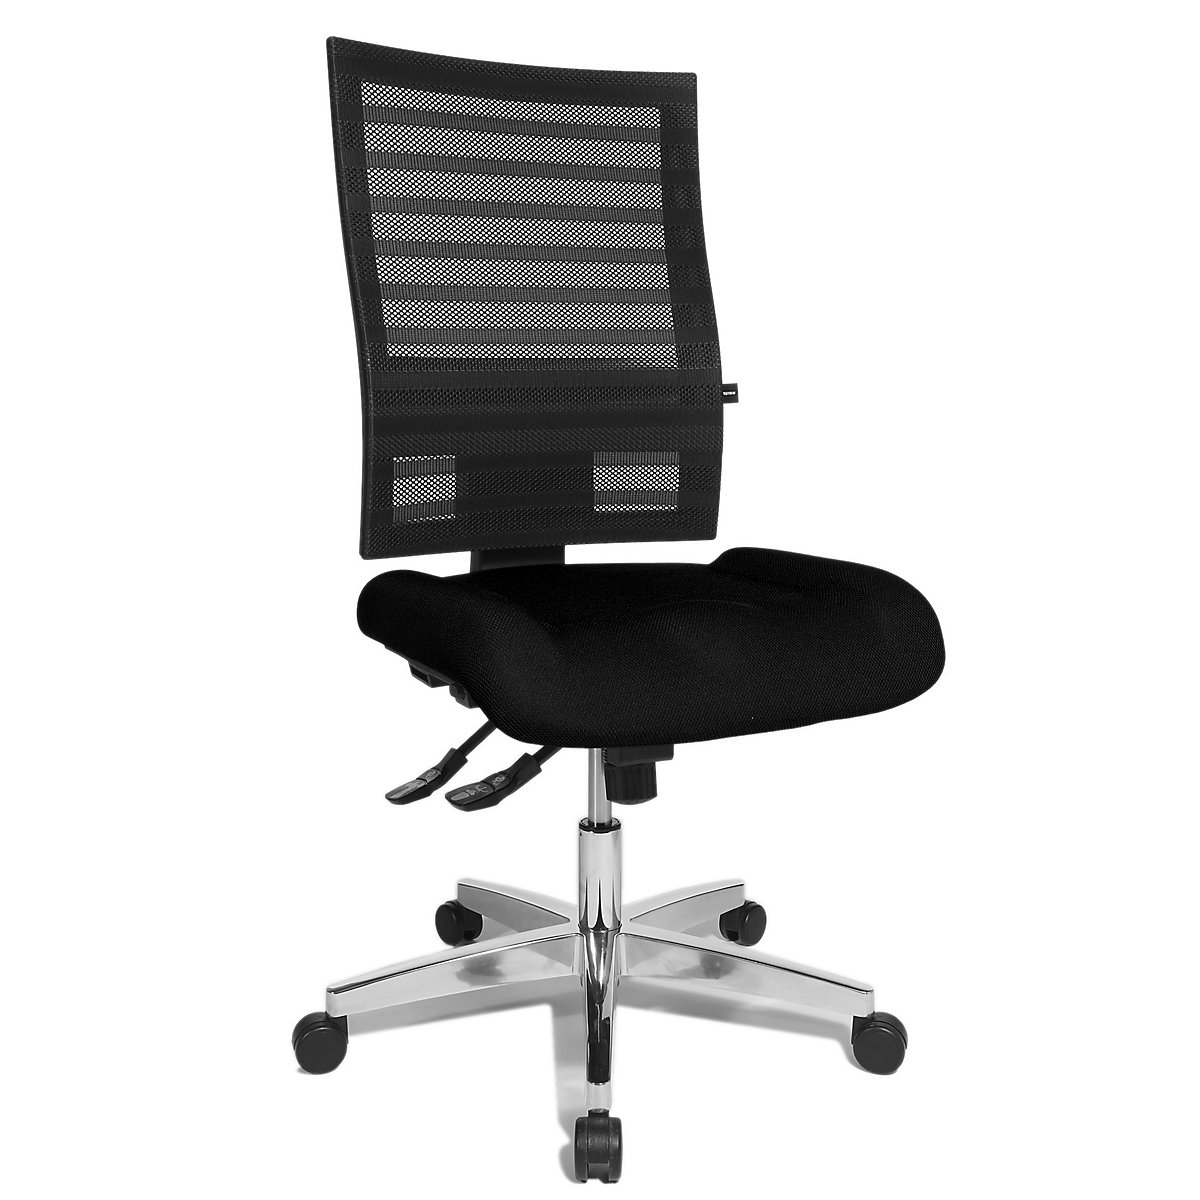 Udobna okretna stolica – Topstar, mrežasti naslon za leđa, u crnoj boji, presvlaka u crnoj boji-3